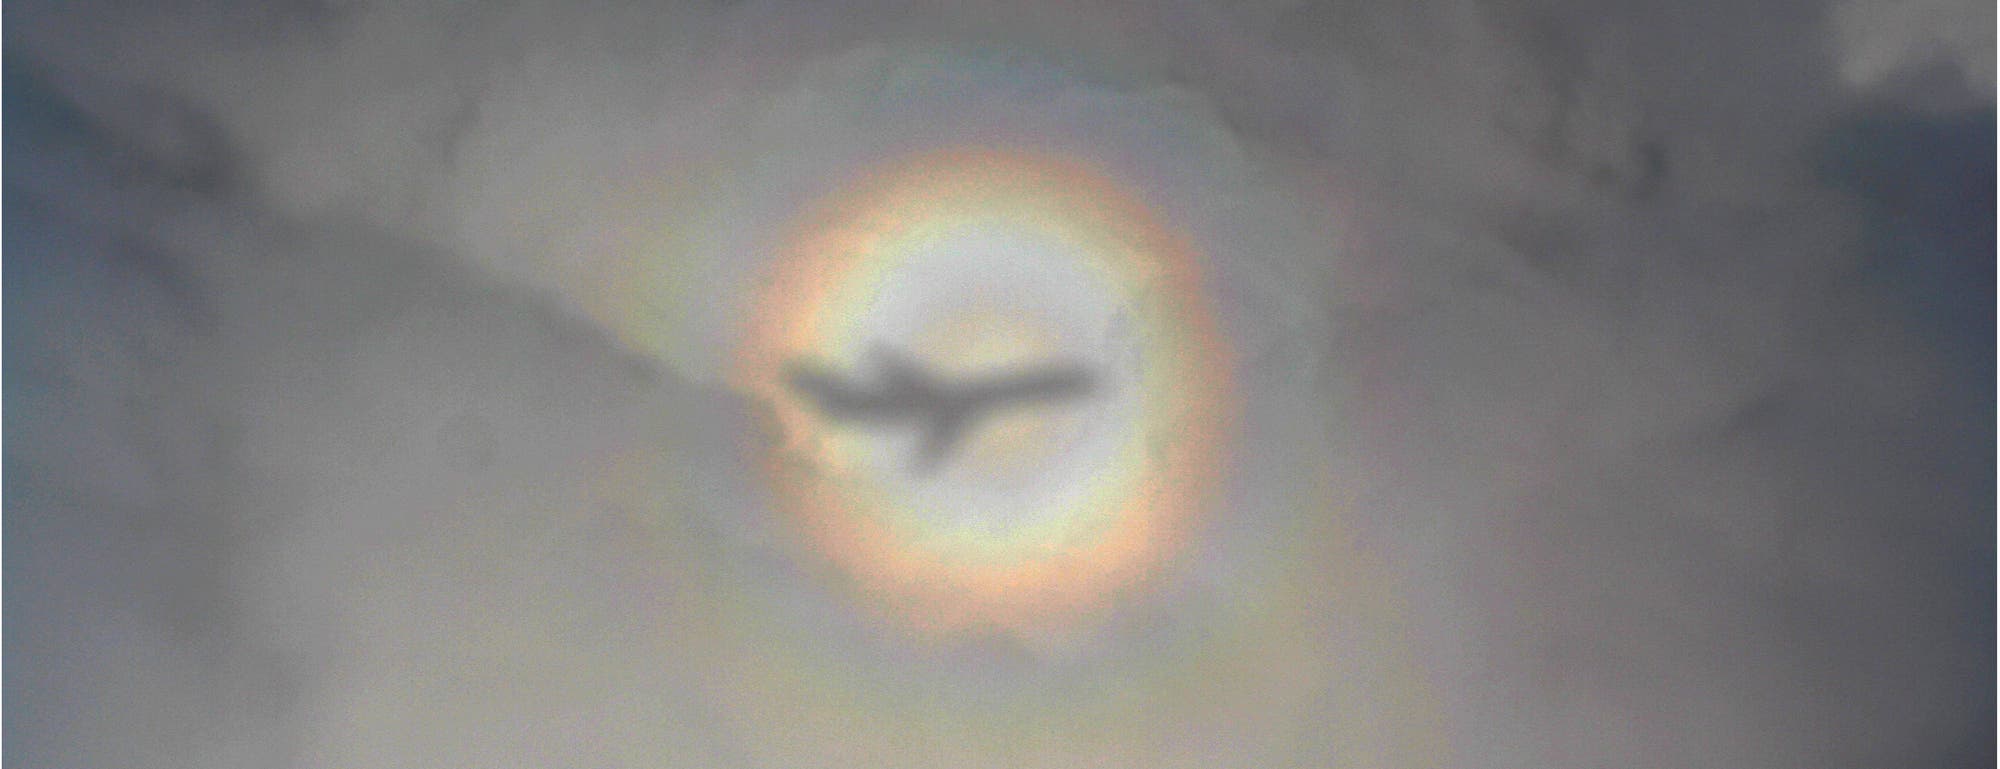 Aureole – Leuchterscheinung am Himmel, durch die ein Flugzeug fliegt